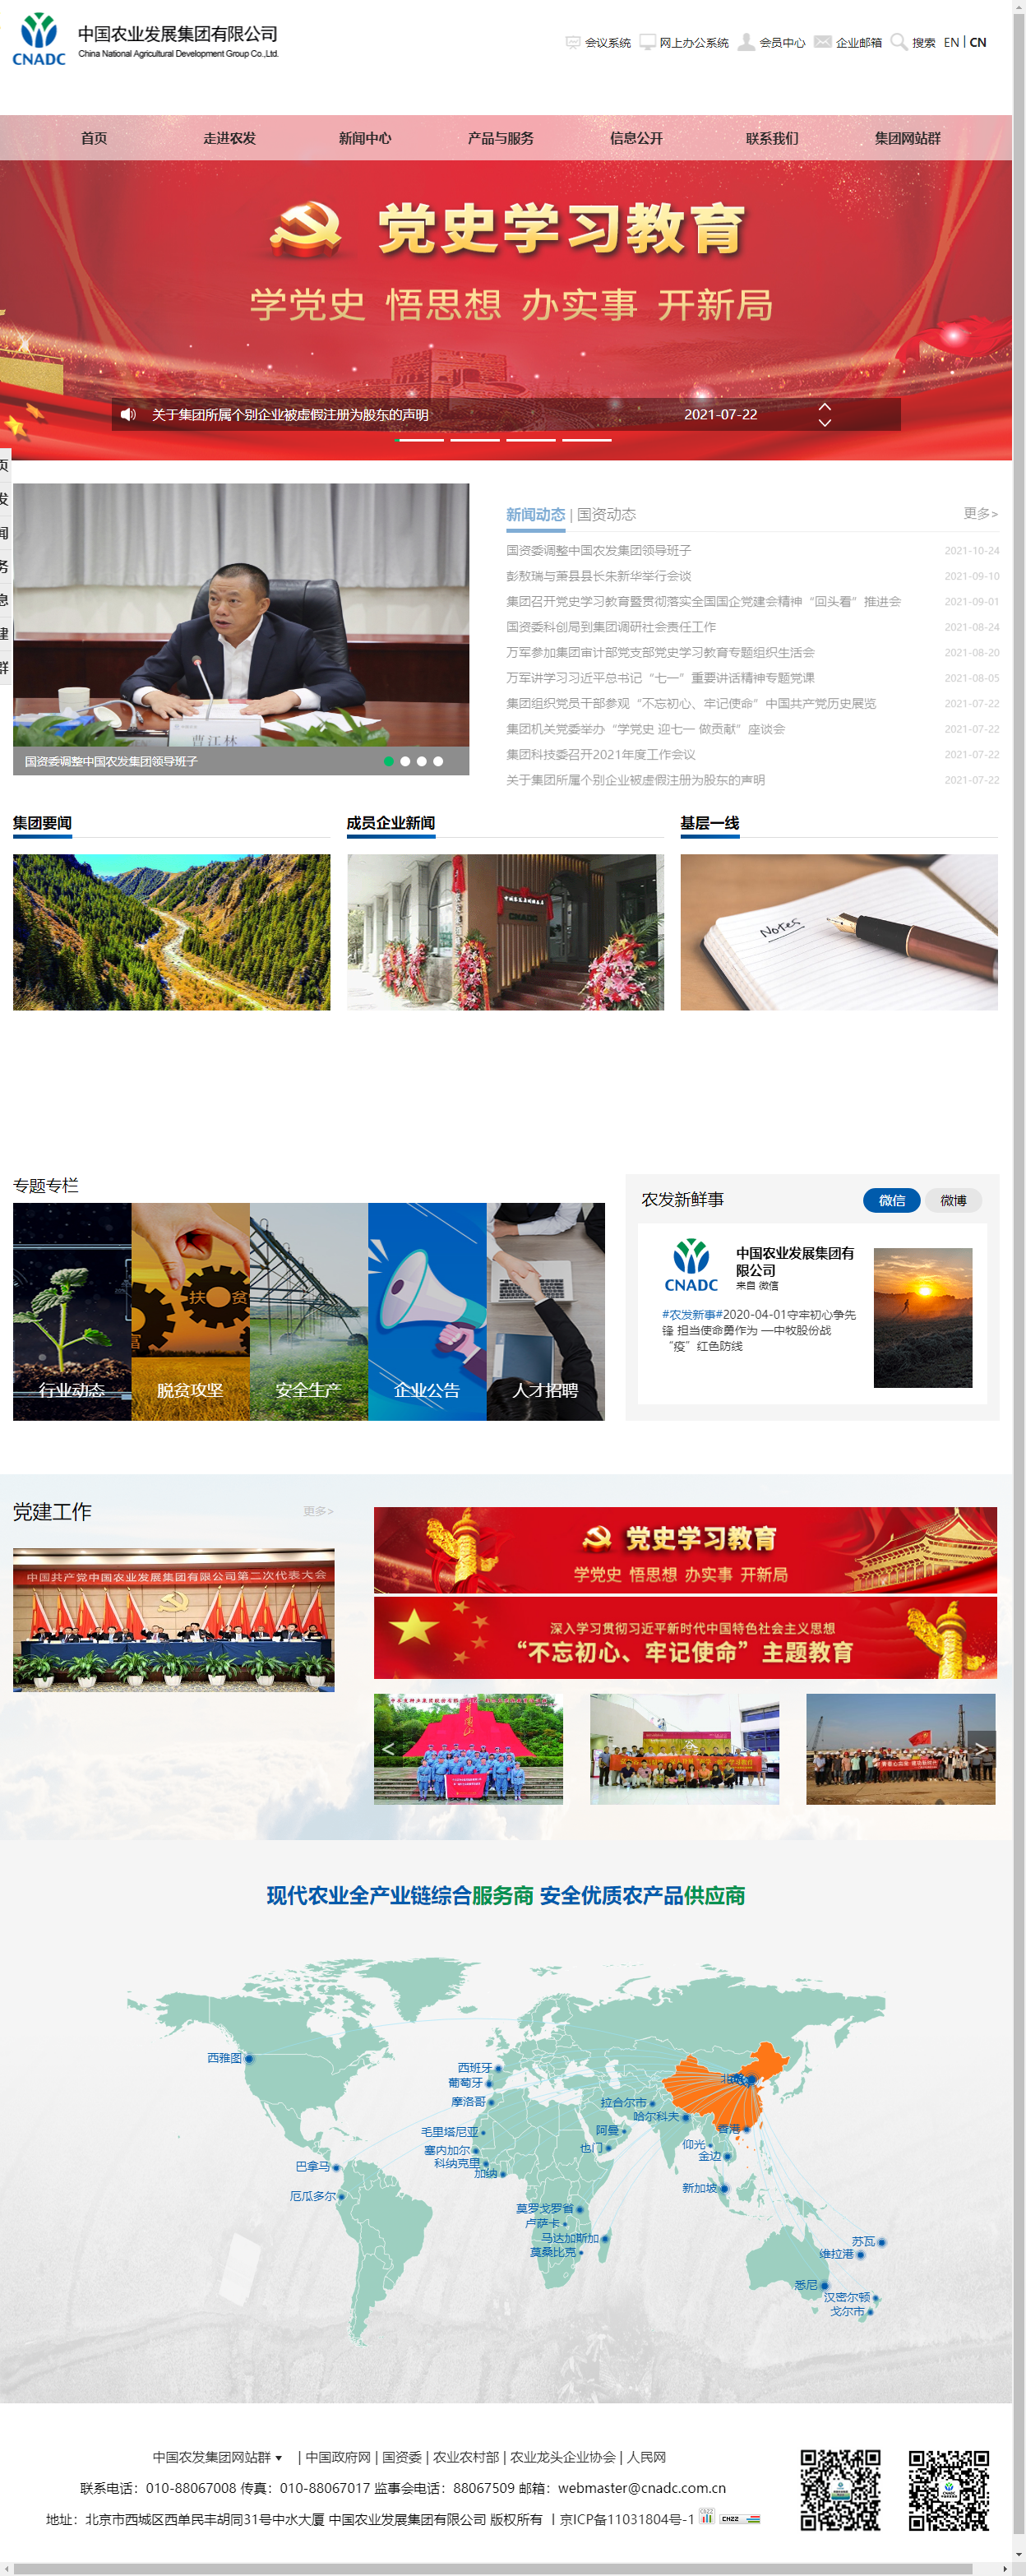 中国农业发展集团有限公司网站案例